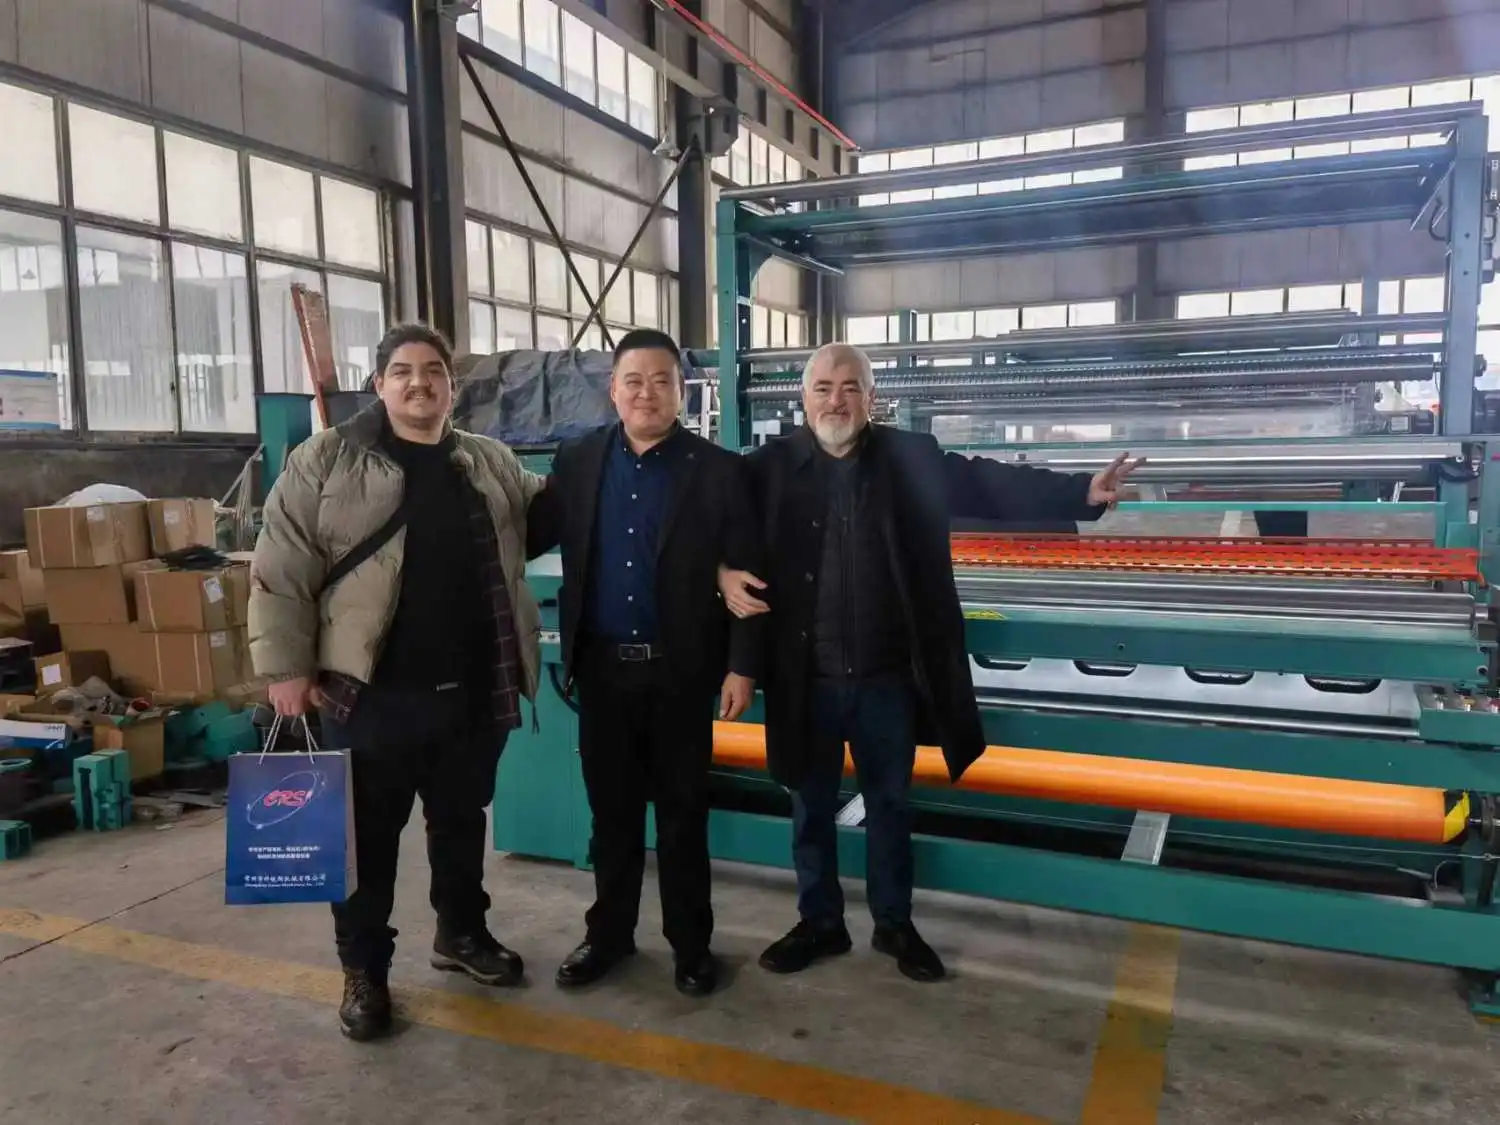 Турецкие клиенты посещают фабрику, чтобы познакомиться с текстильным оборудованием